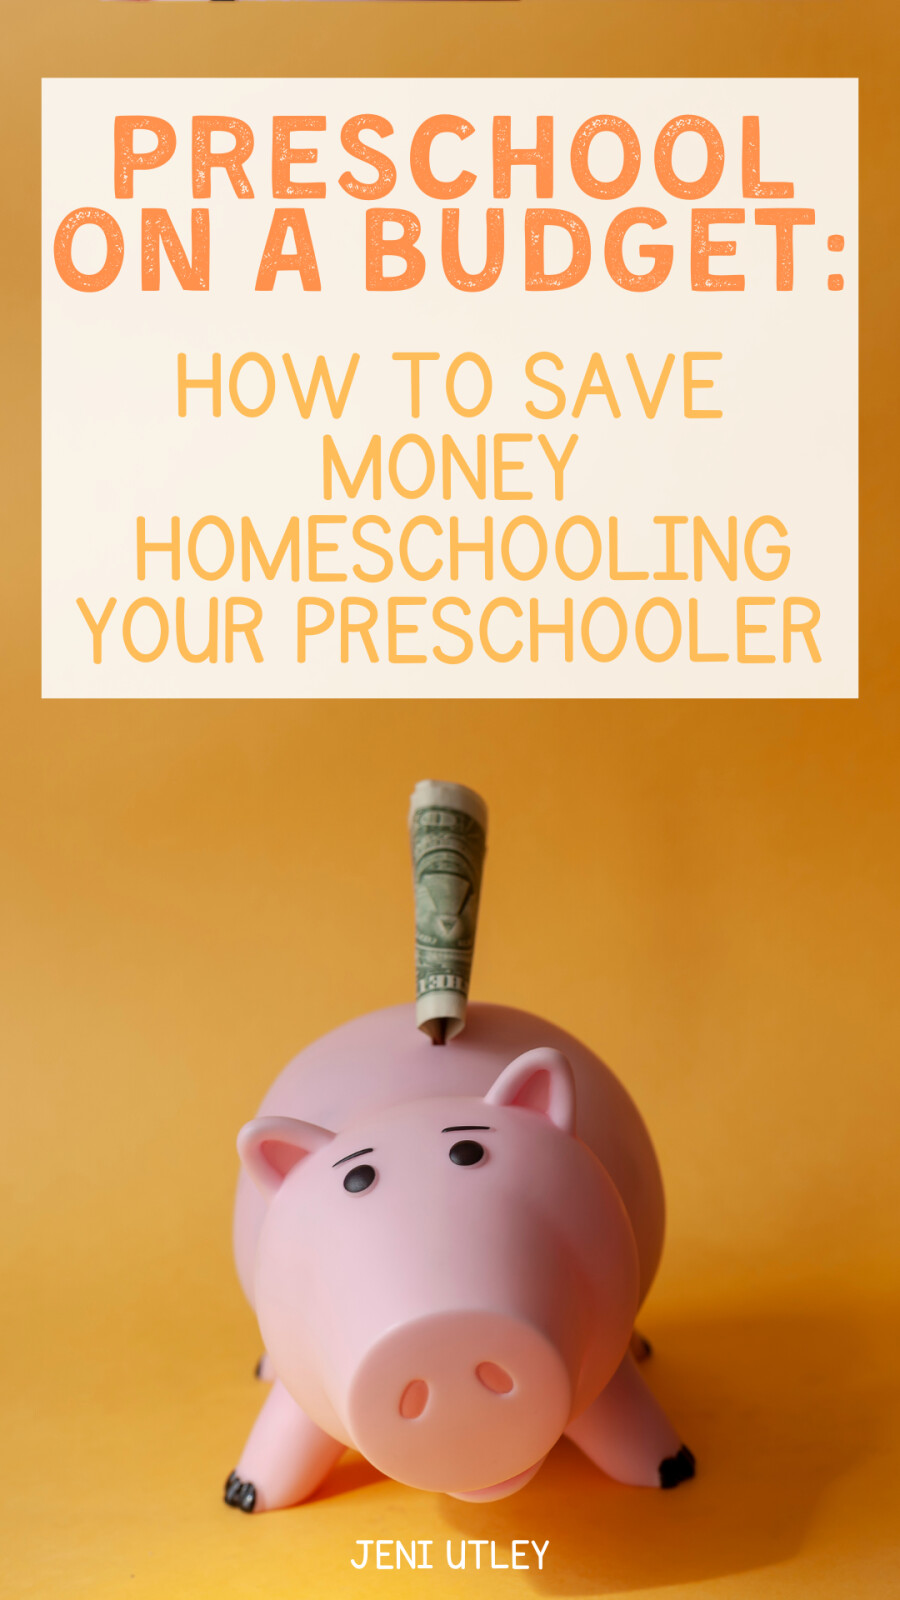 Preschool on a Budget: How to Save Money Homeschooling Your Preschooler